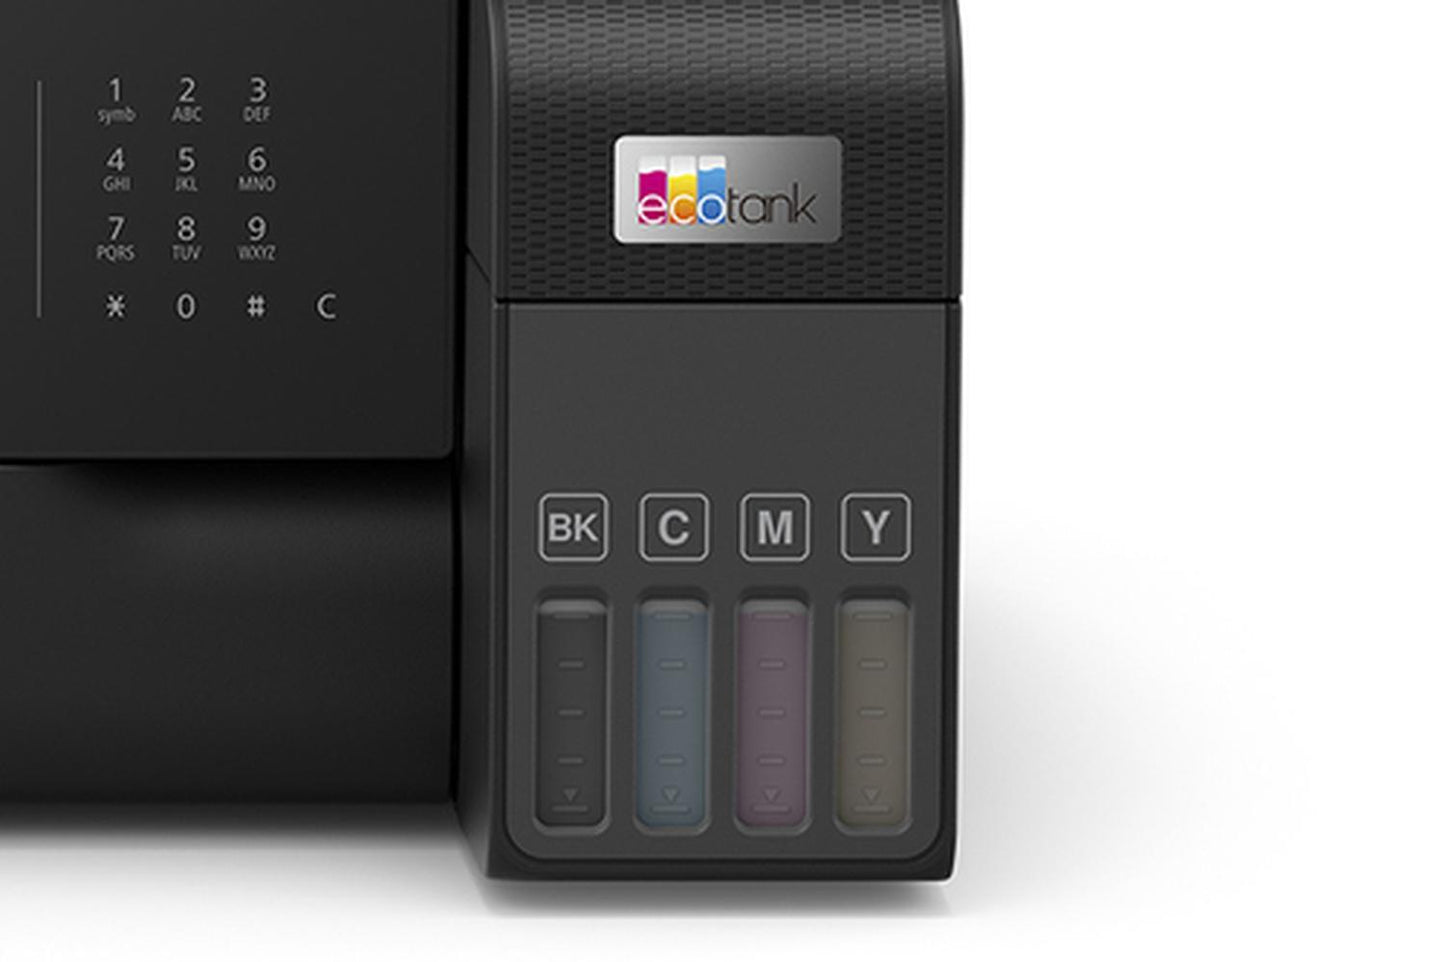 Impresora Multifuncional a color Epson Ecotank L5590 Wifi